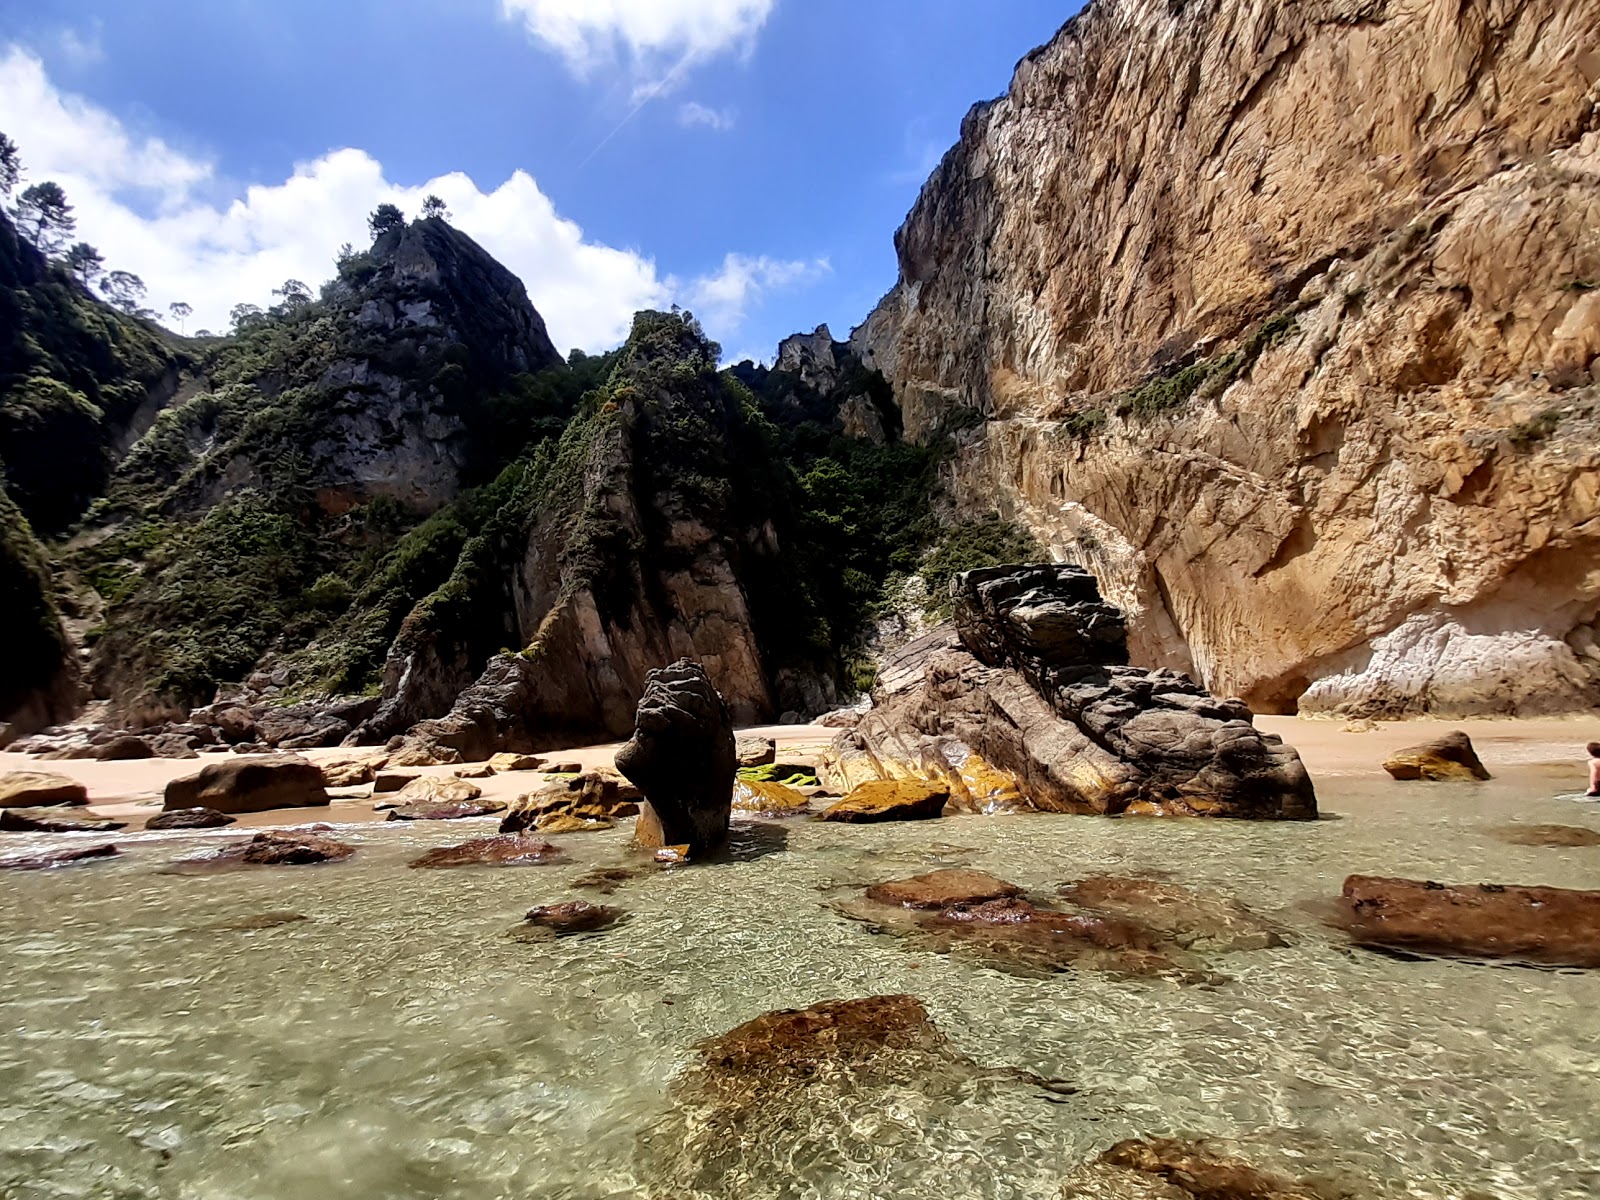 Playa de la Acacia'in fotoğrafı parlak ince kum yüzey ile